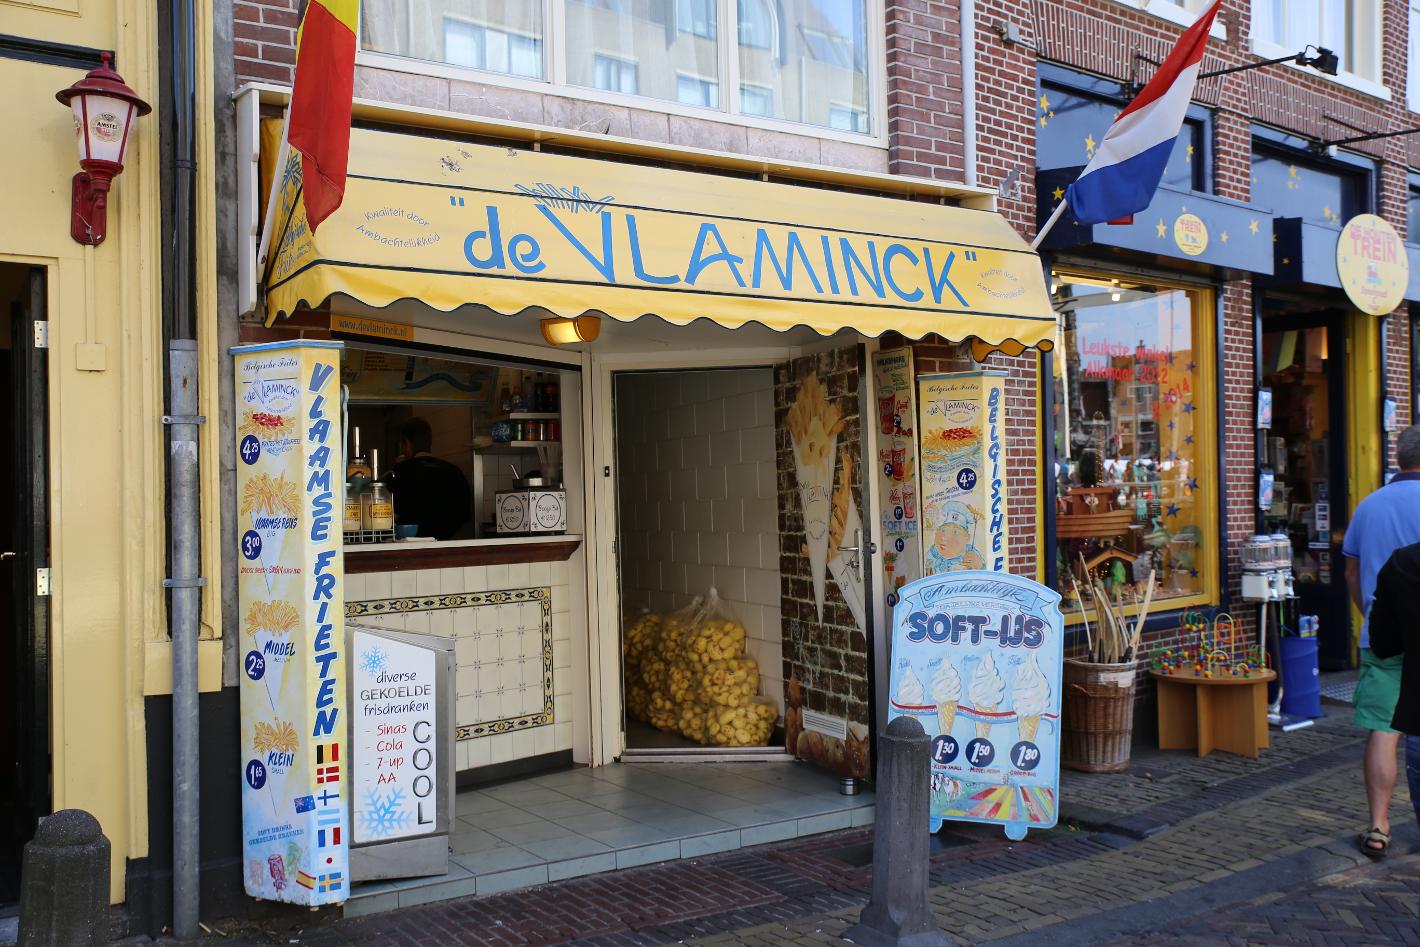 Foto Friethuis De Vlaminck in Alkmaar, Essen & Trinken, Snack & dazwischen - #1